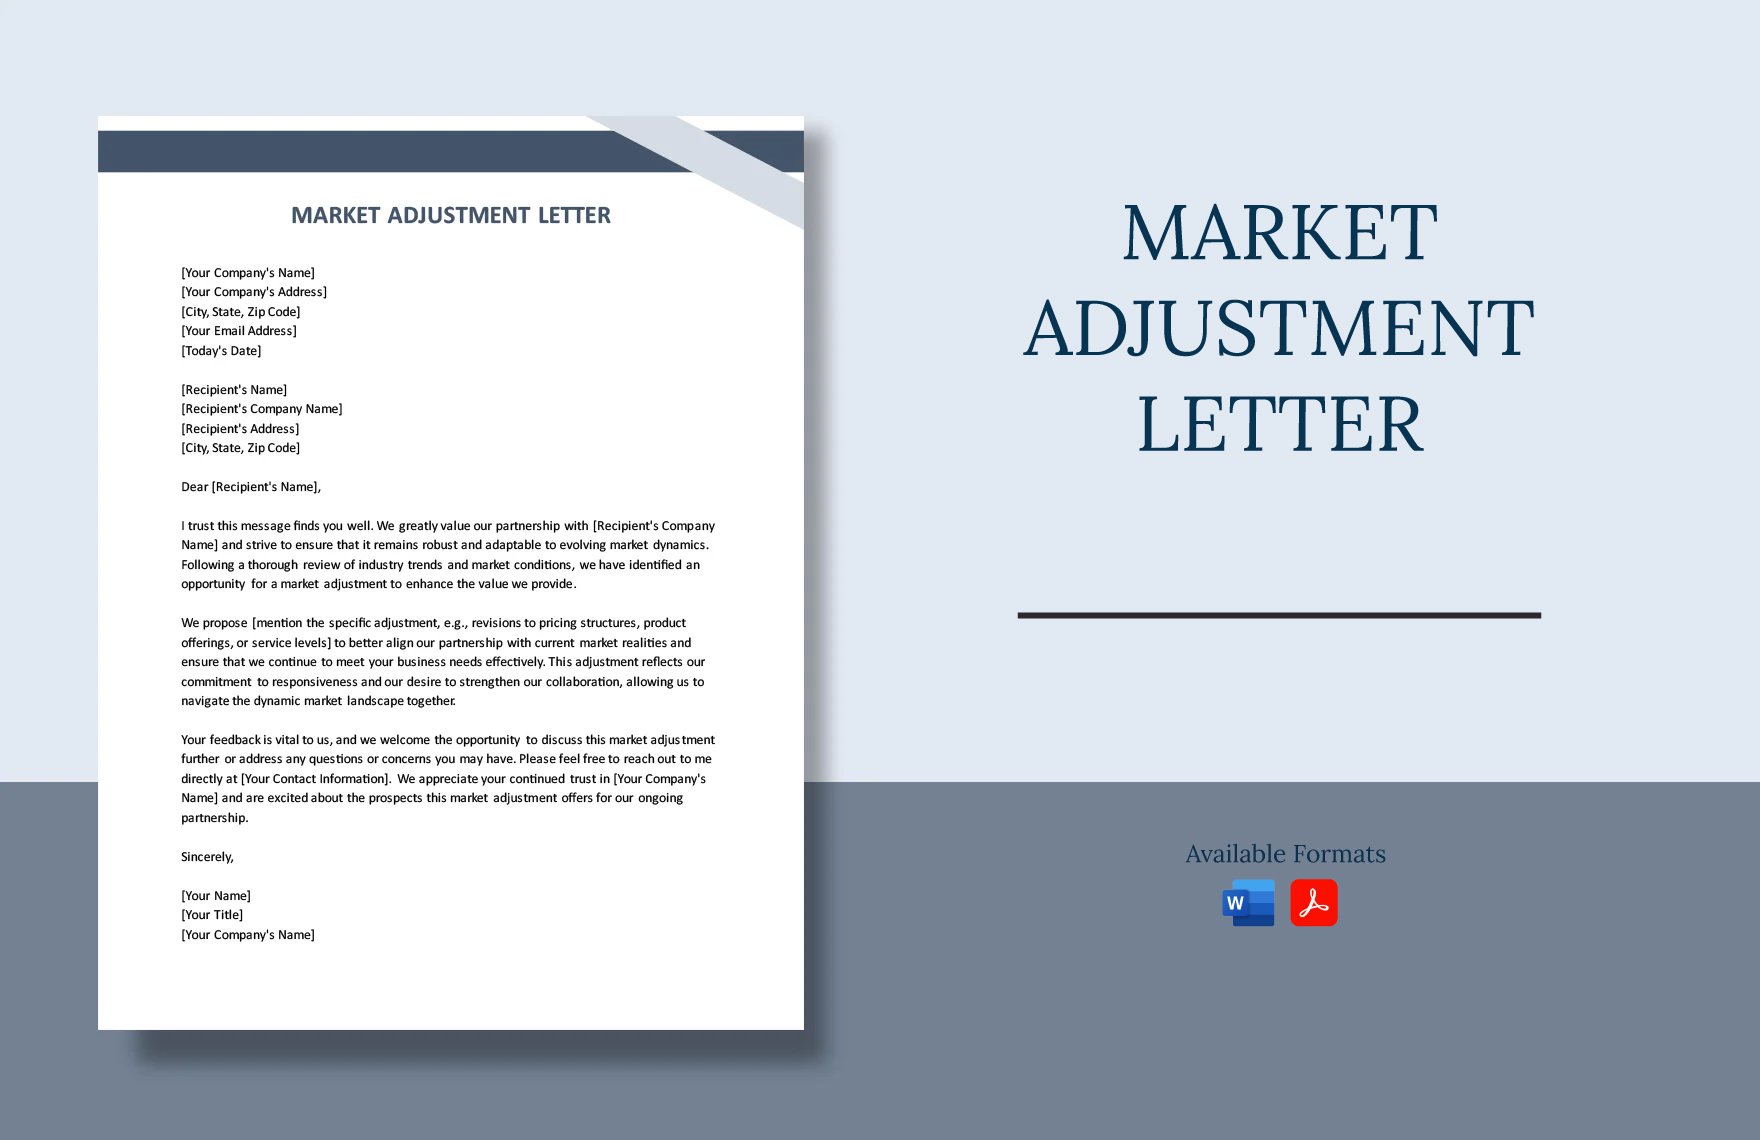 Market Adjustment Letter in Word, PDF